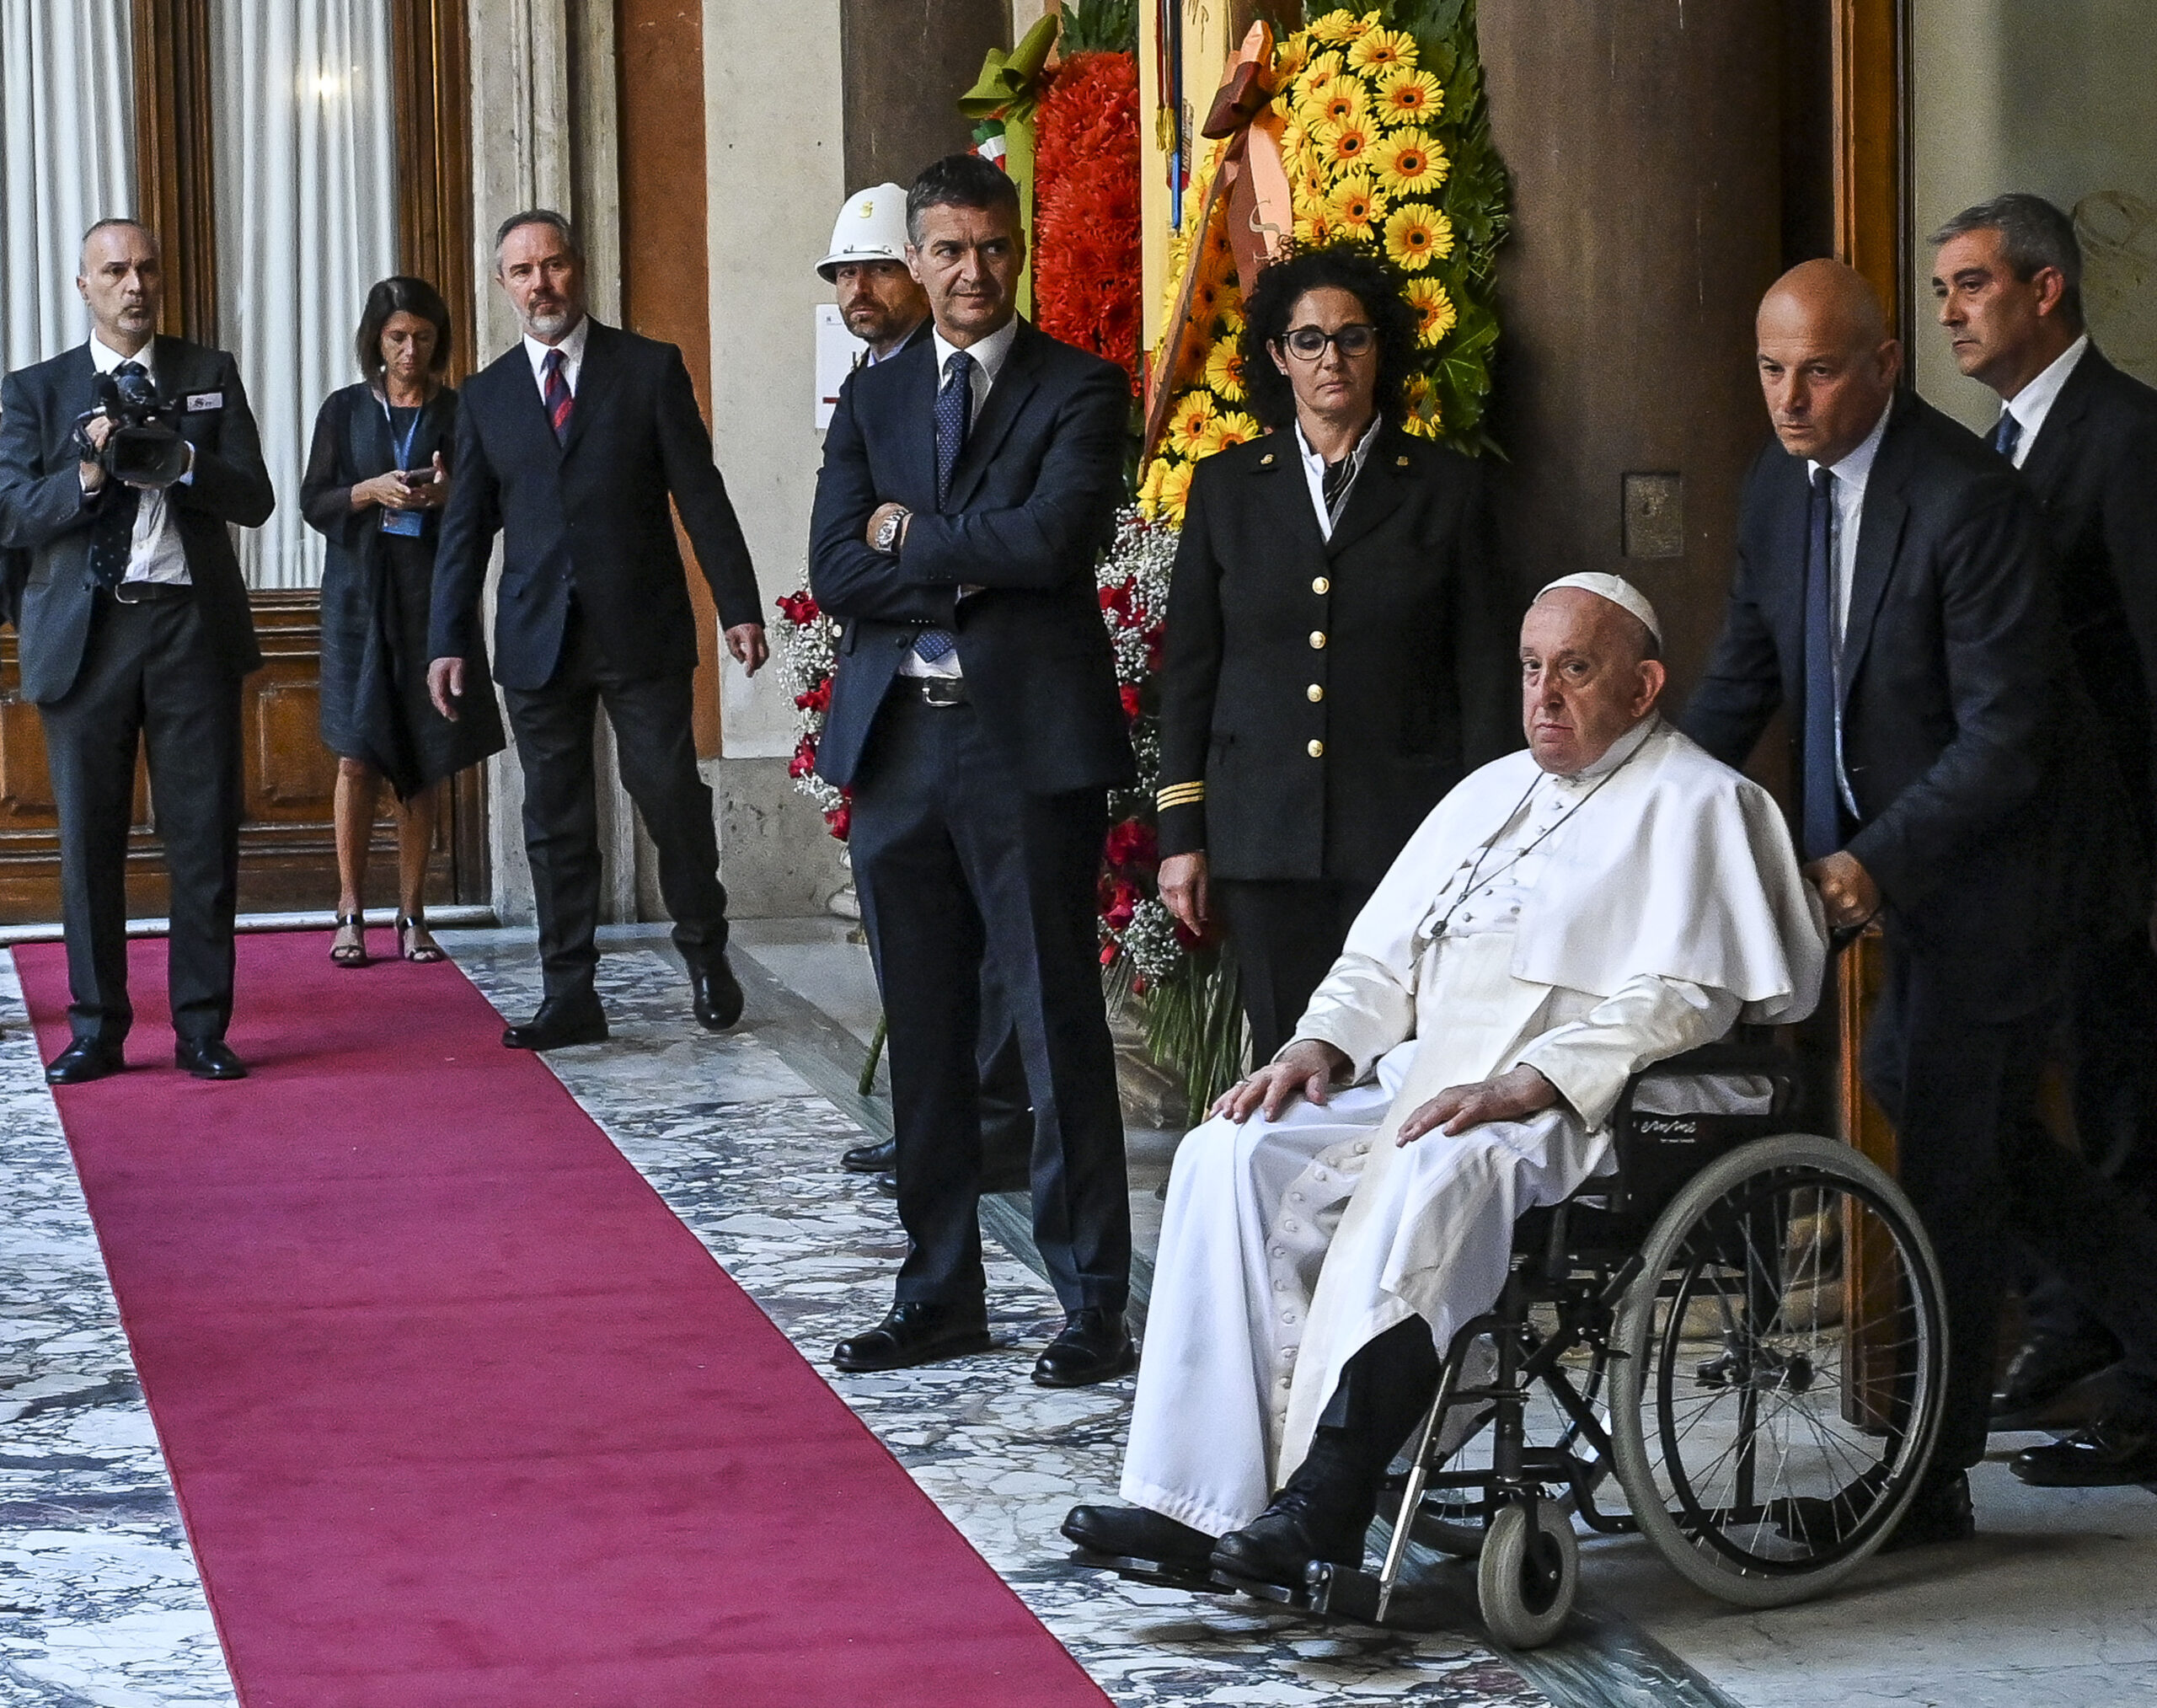 Il papa claudicante va a salutare Napolitano, ecco il vero atto cristiano!